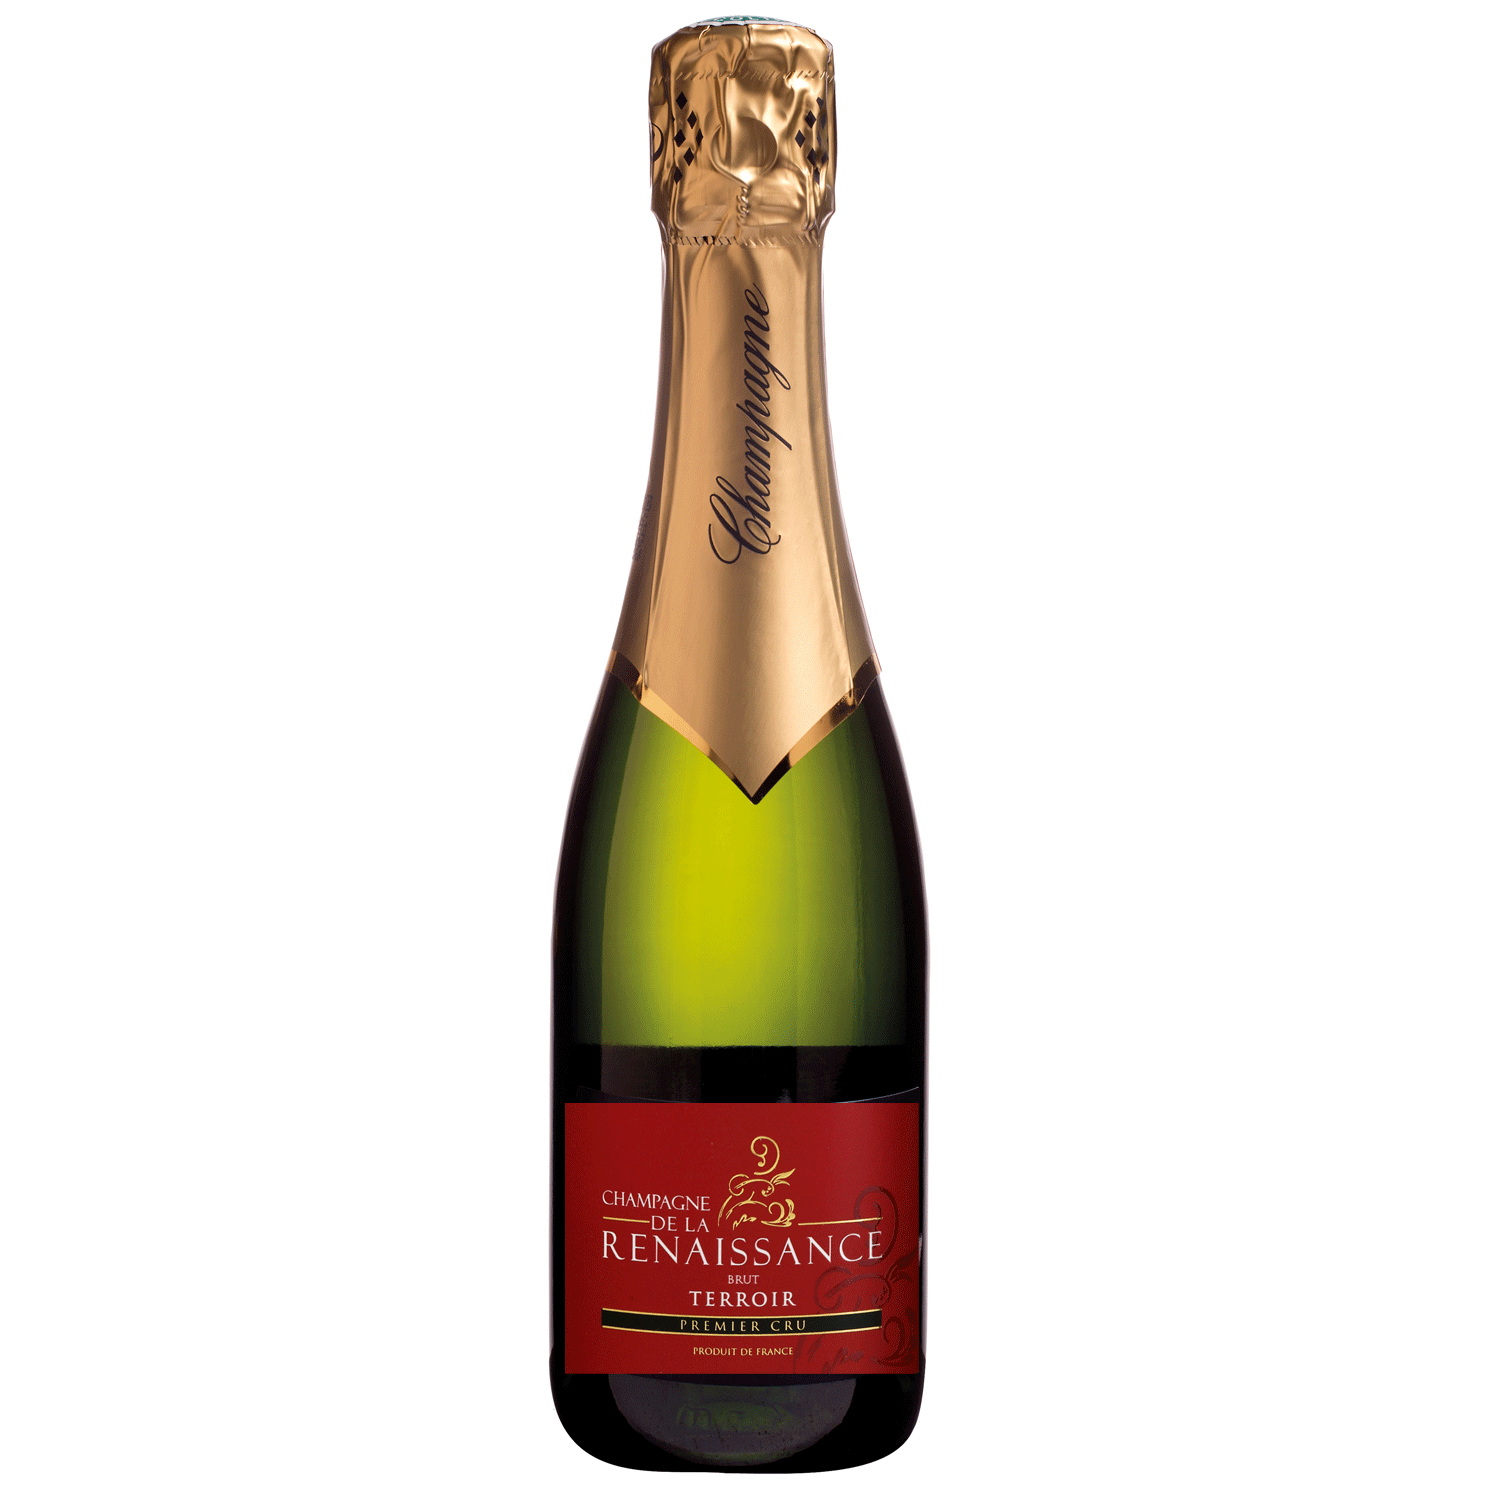 Champagne de la Renaissance: Brut Terroir - 1er Cru - 0,375L